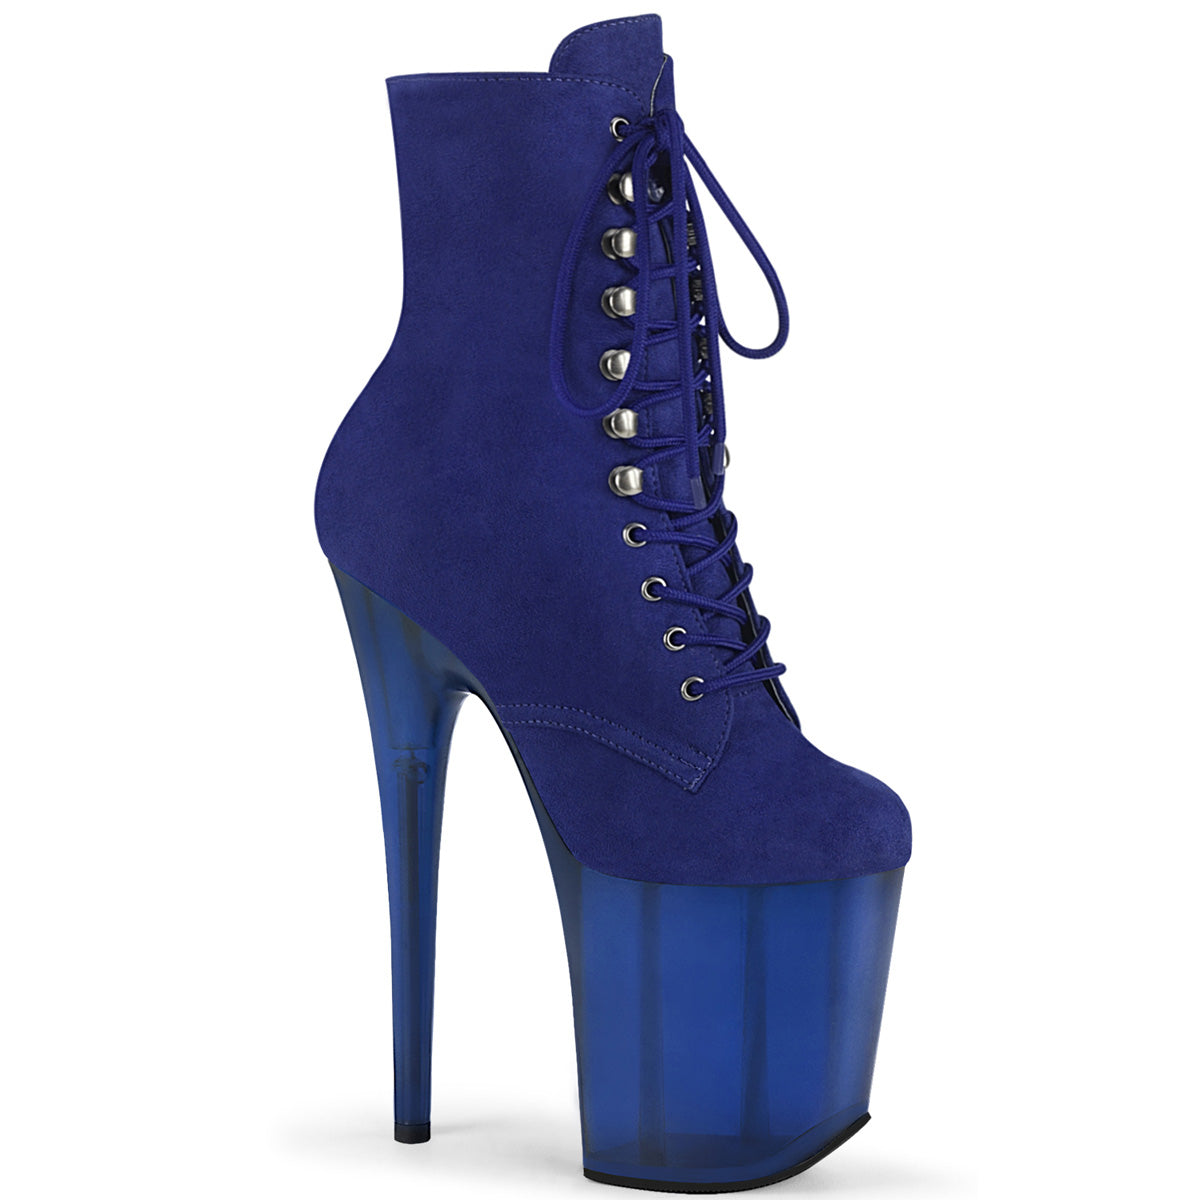 Pleaser Bottines pour femmes FLAMINGO-1020fst bleu royal en faux daim / bleu givré